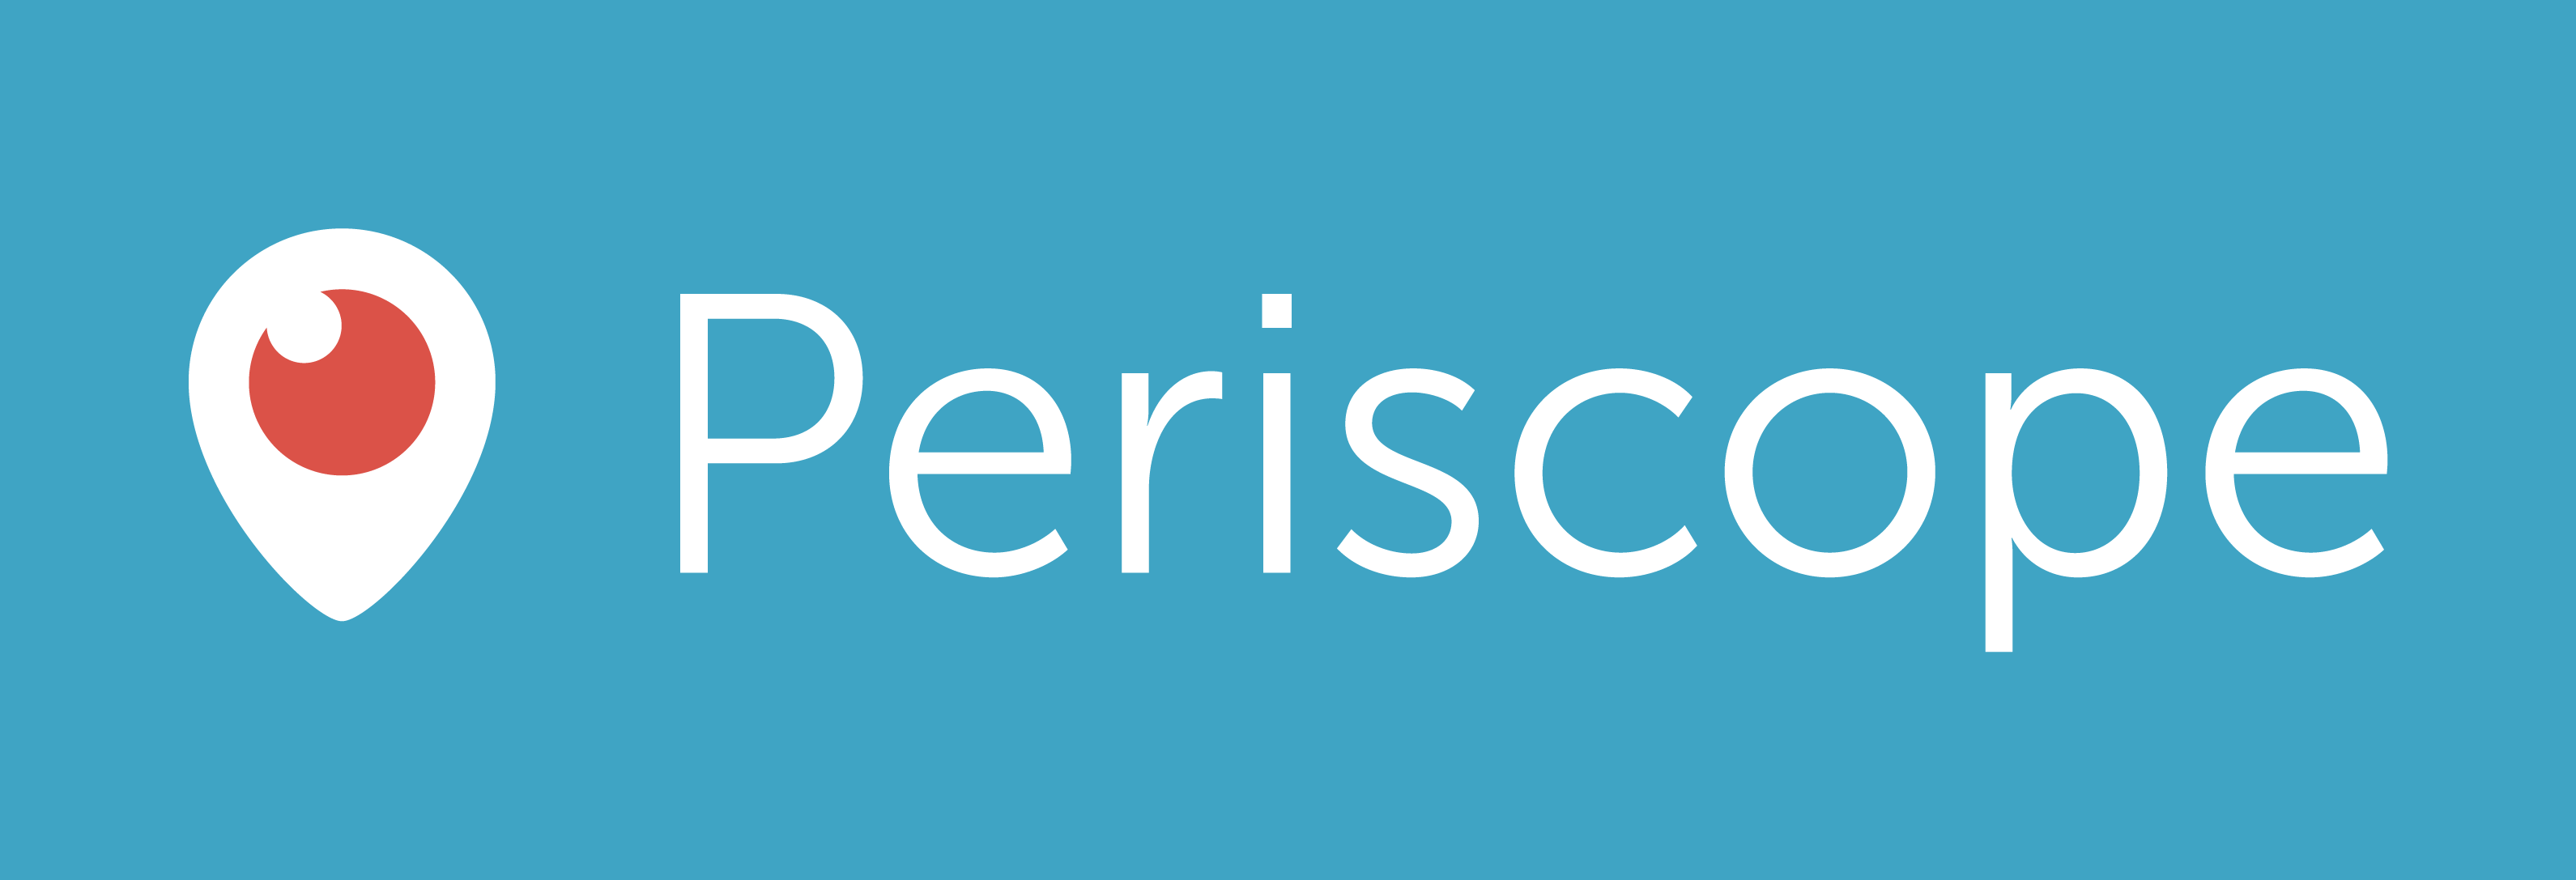 periscope-logo.png